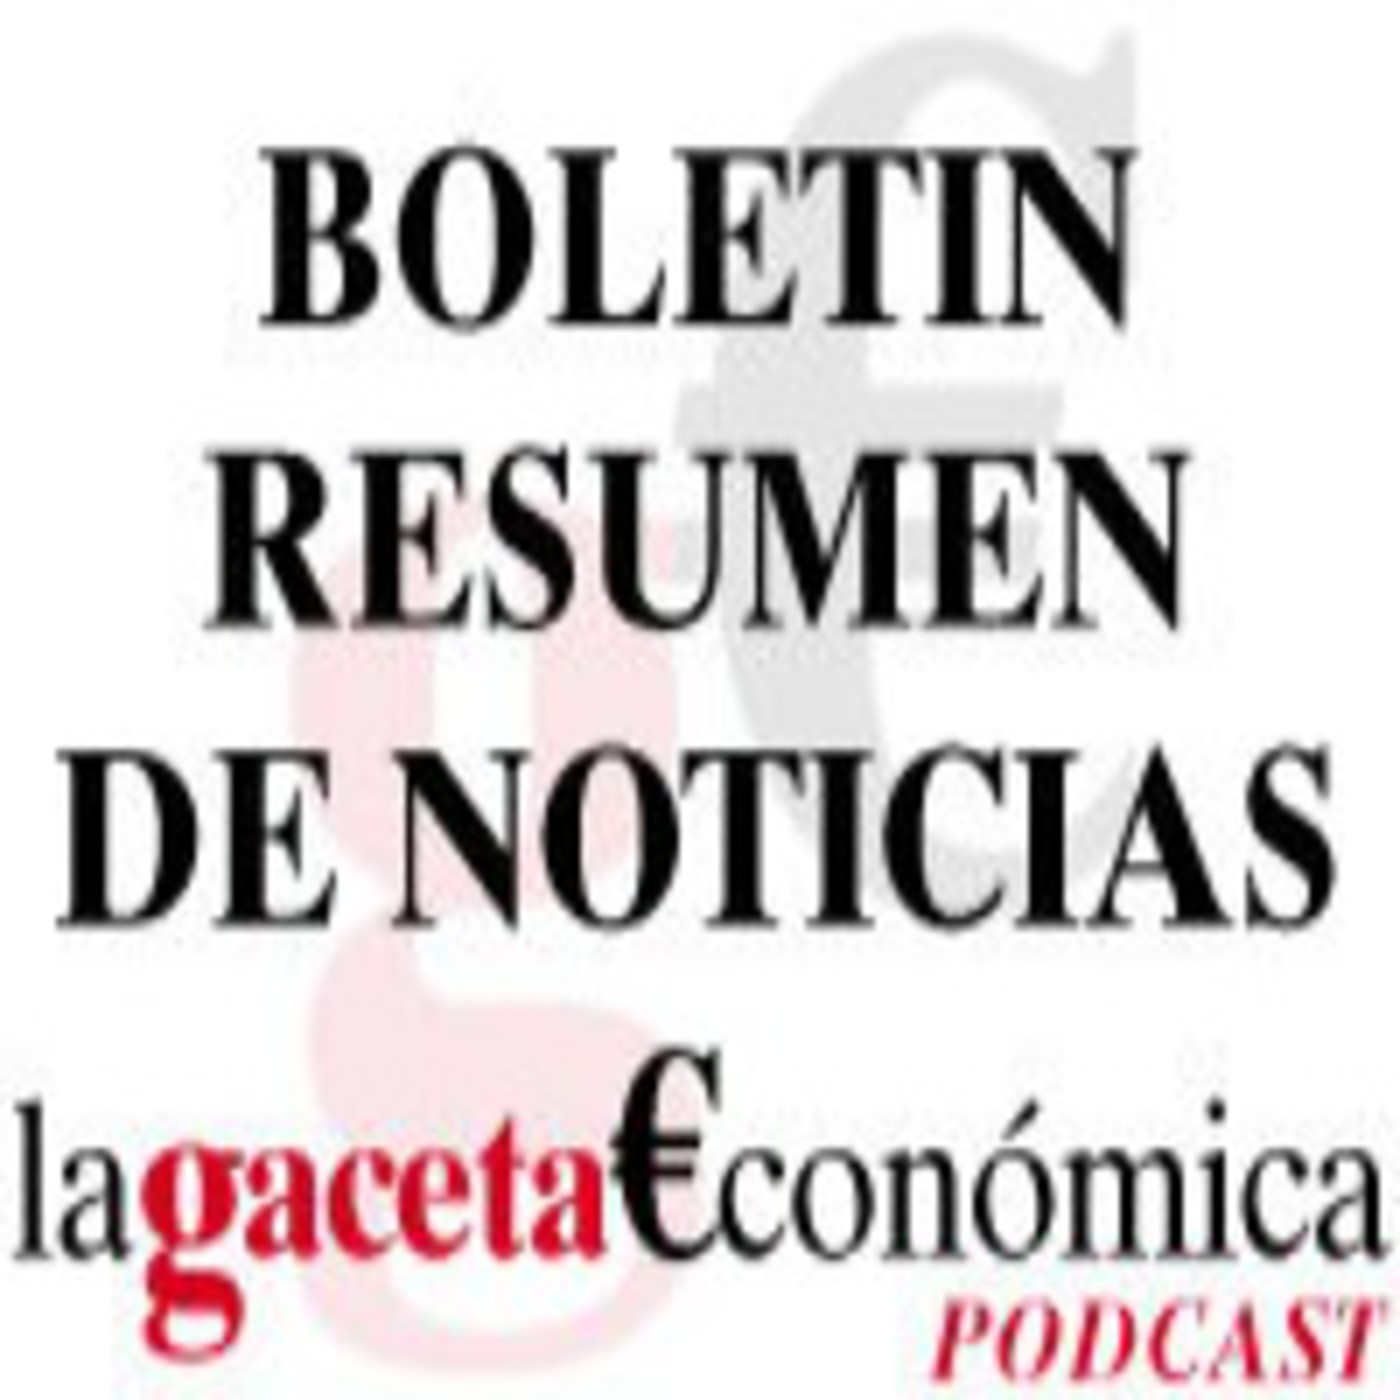 Boletin Noticias 28 abril 2011 La Gaceta Económica de Almería